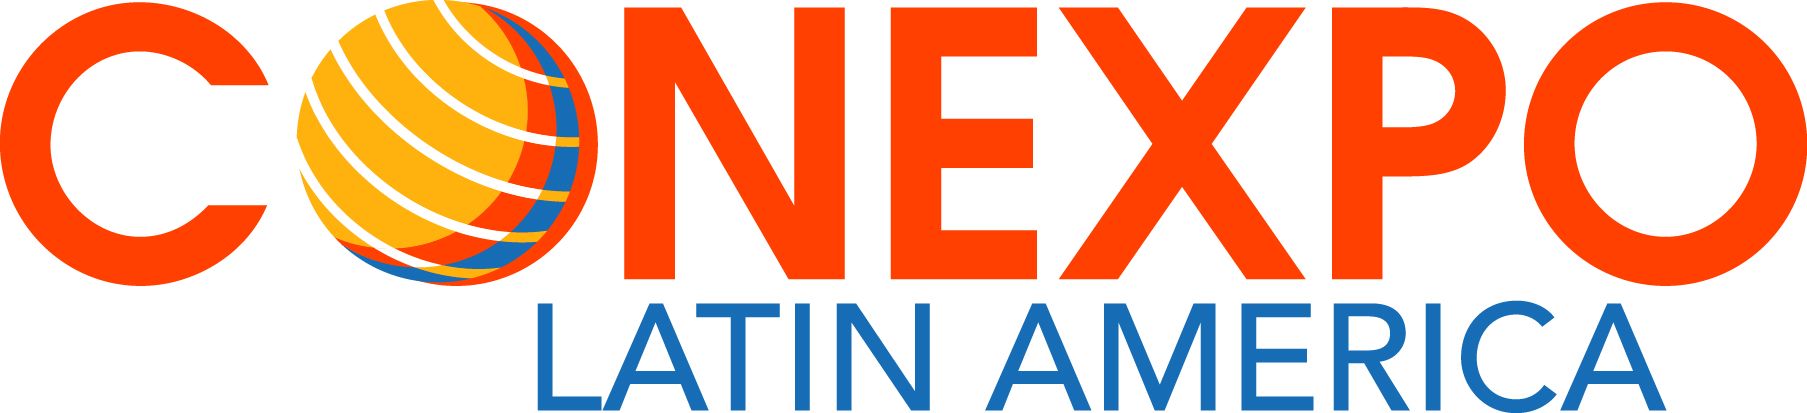 CONEXPO Latin America 2015 2014